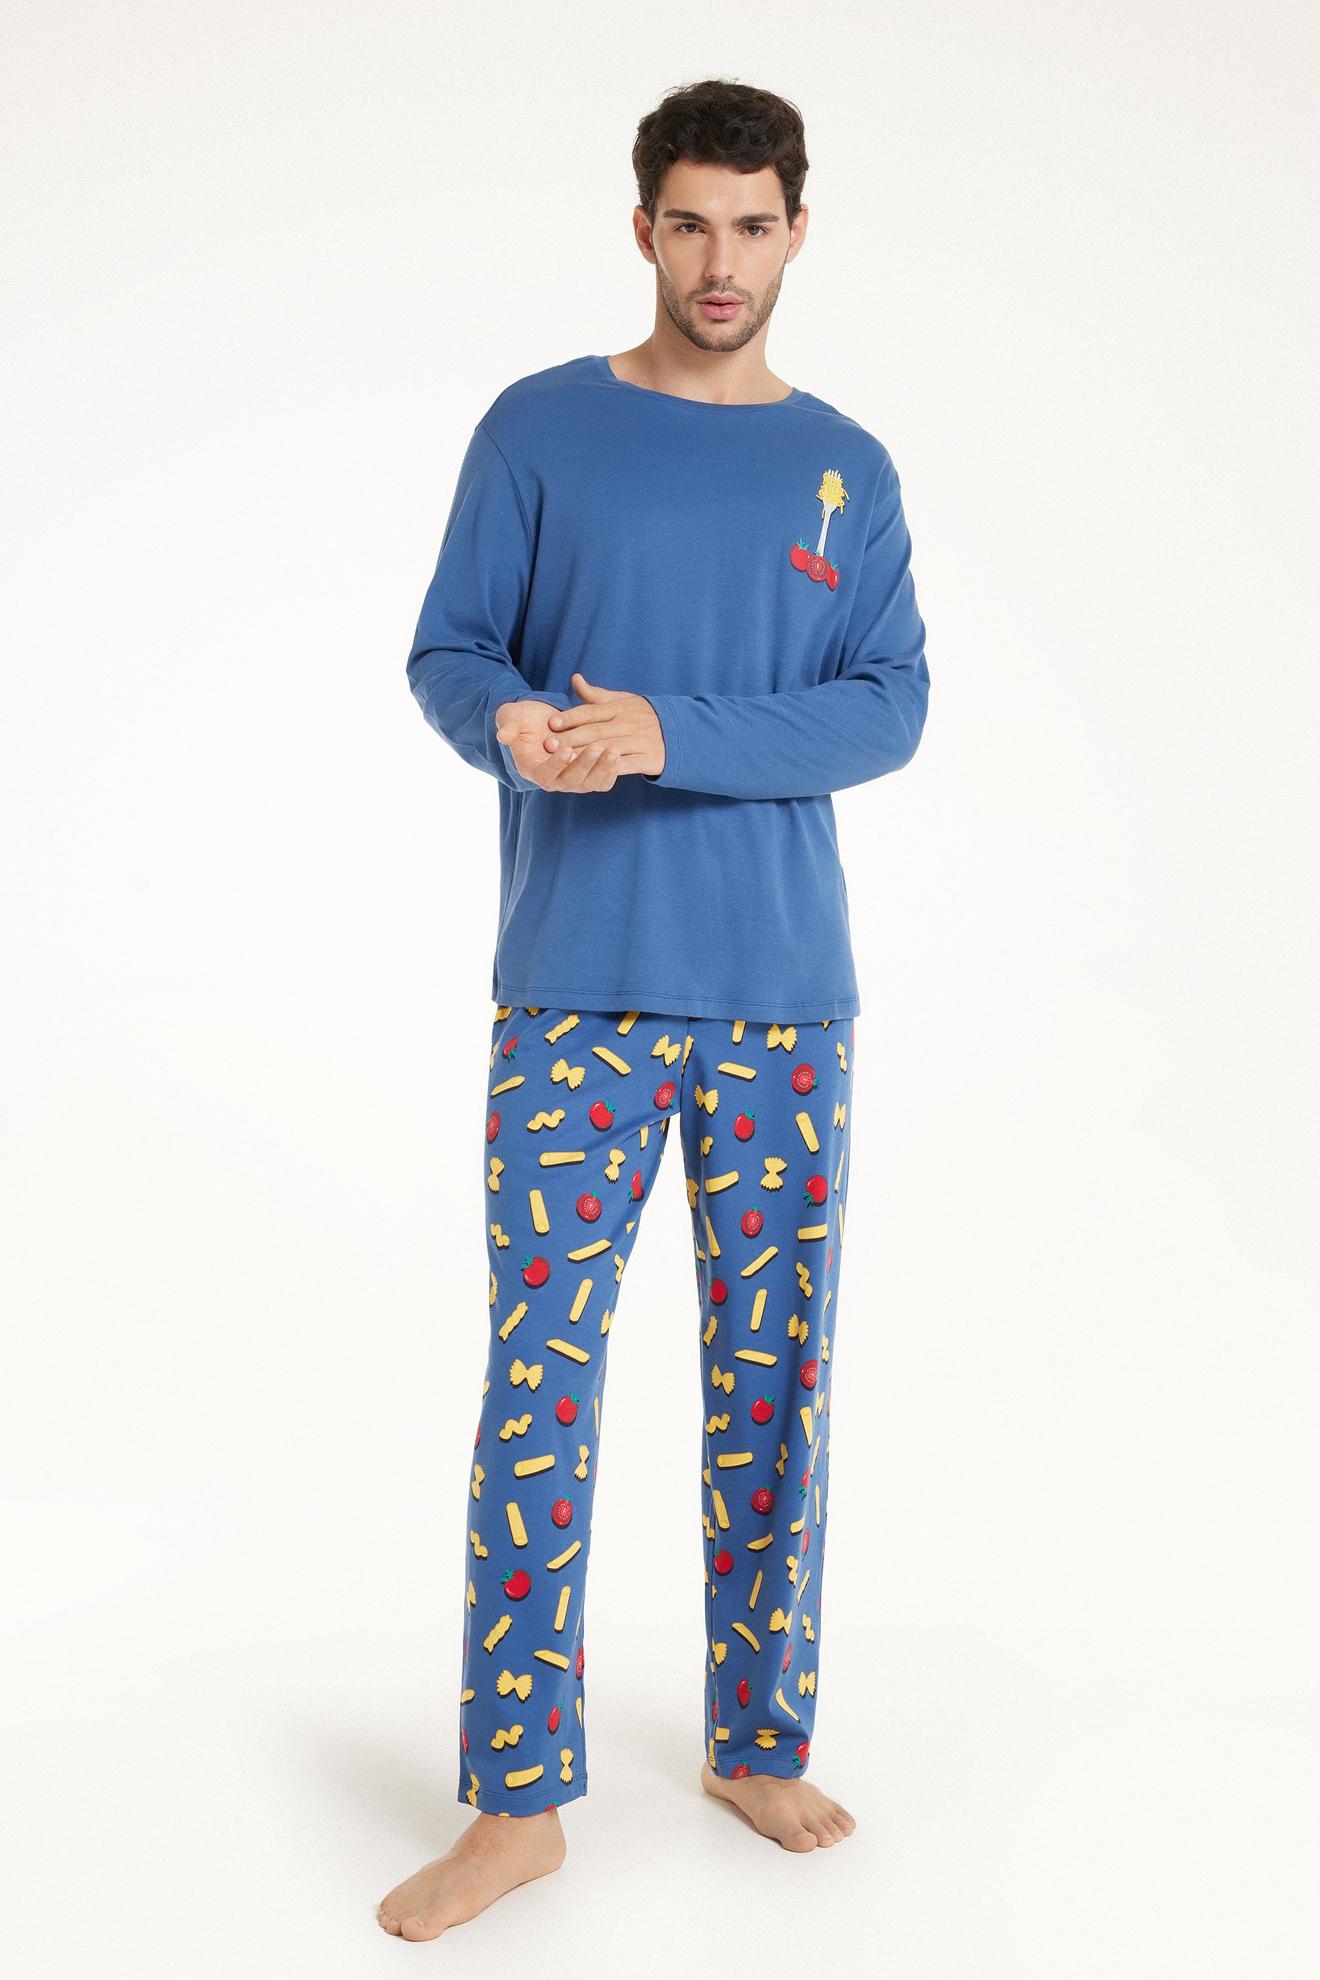 Langer Pyjama aus Baumwolle mit Pastaprint für 8€ in Tezenis